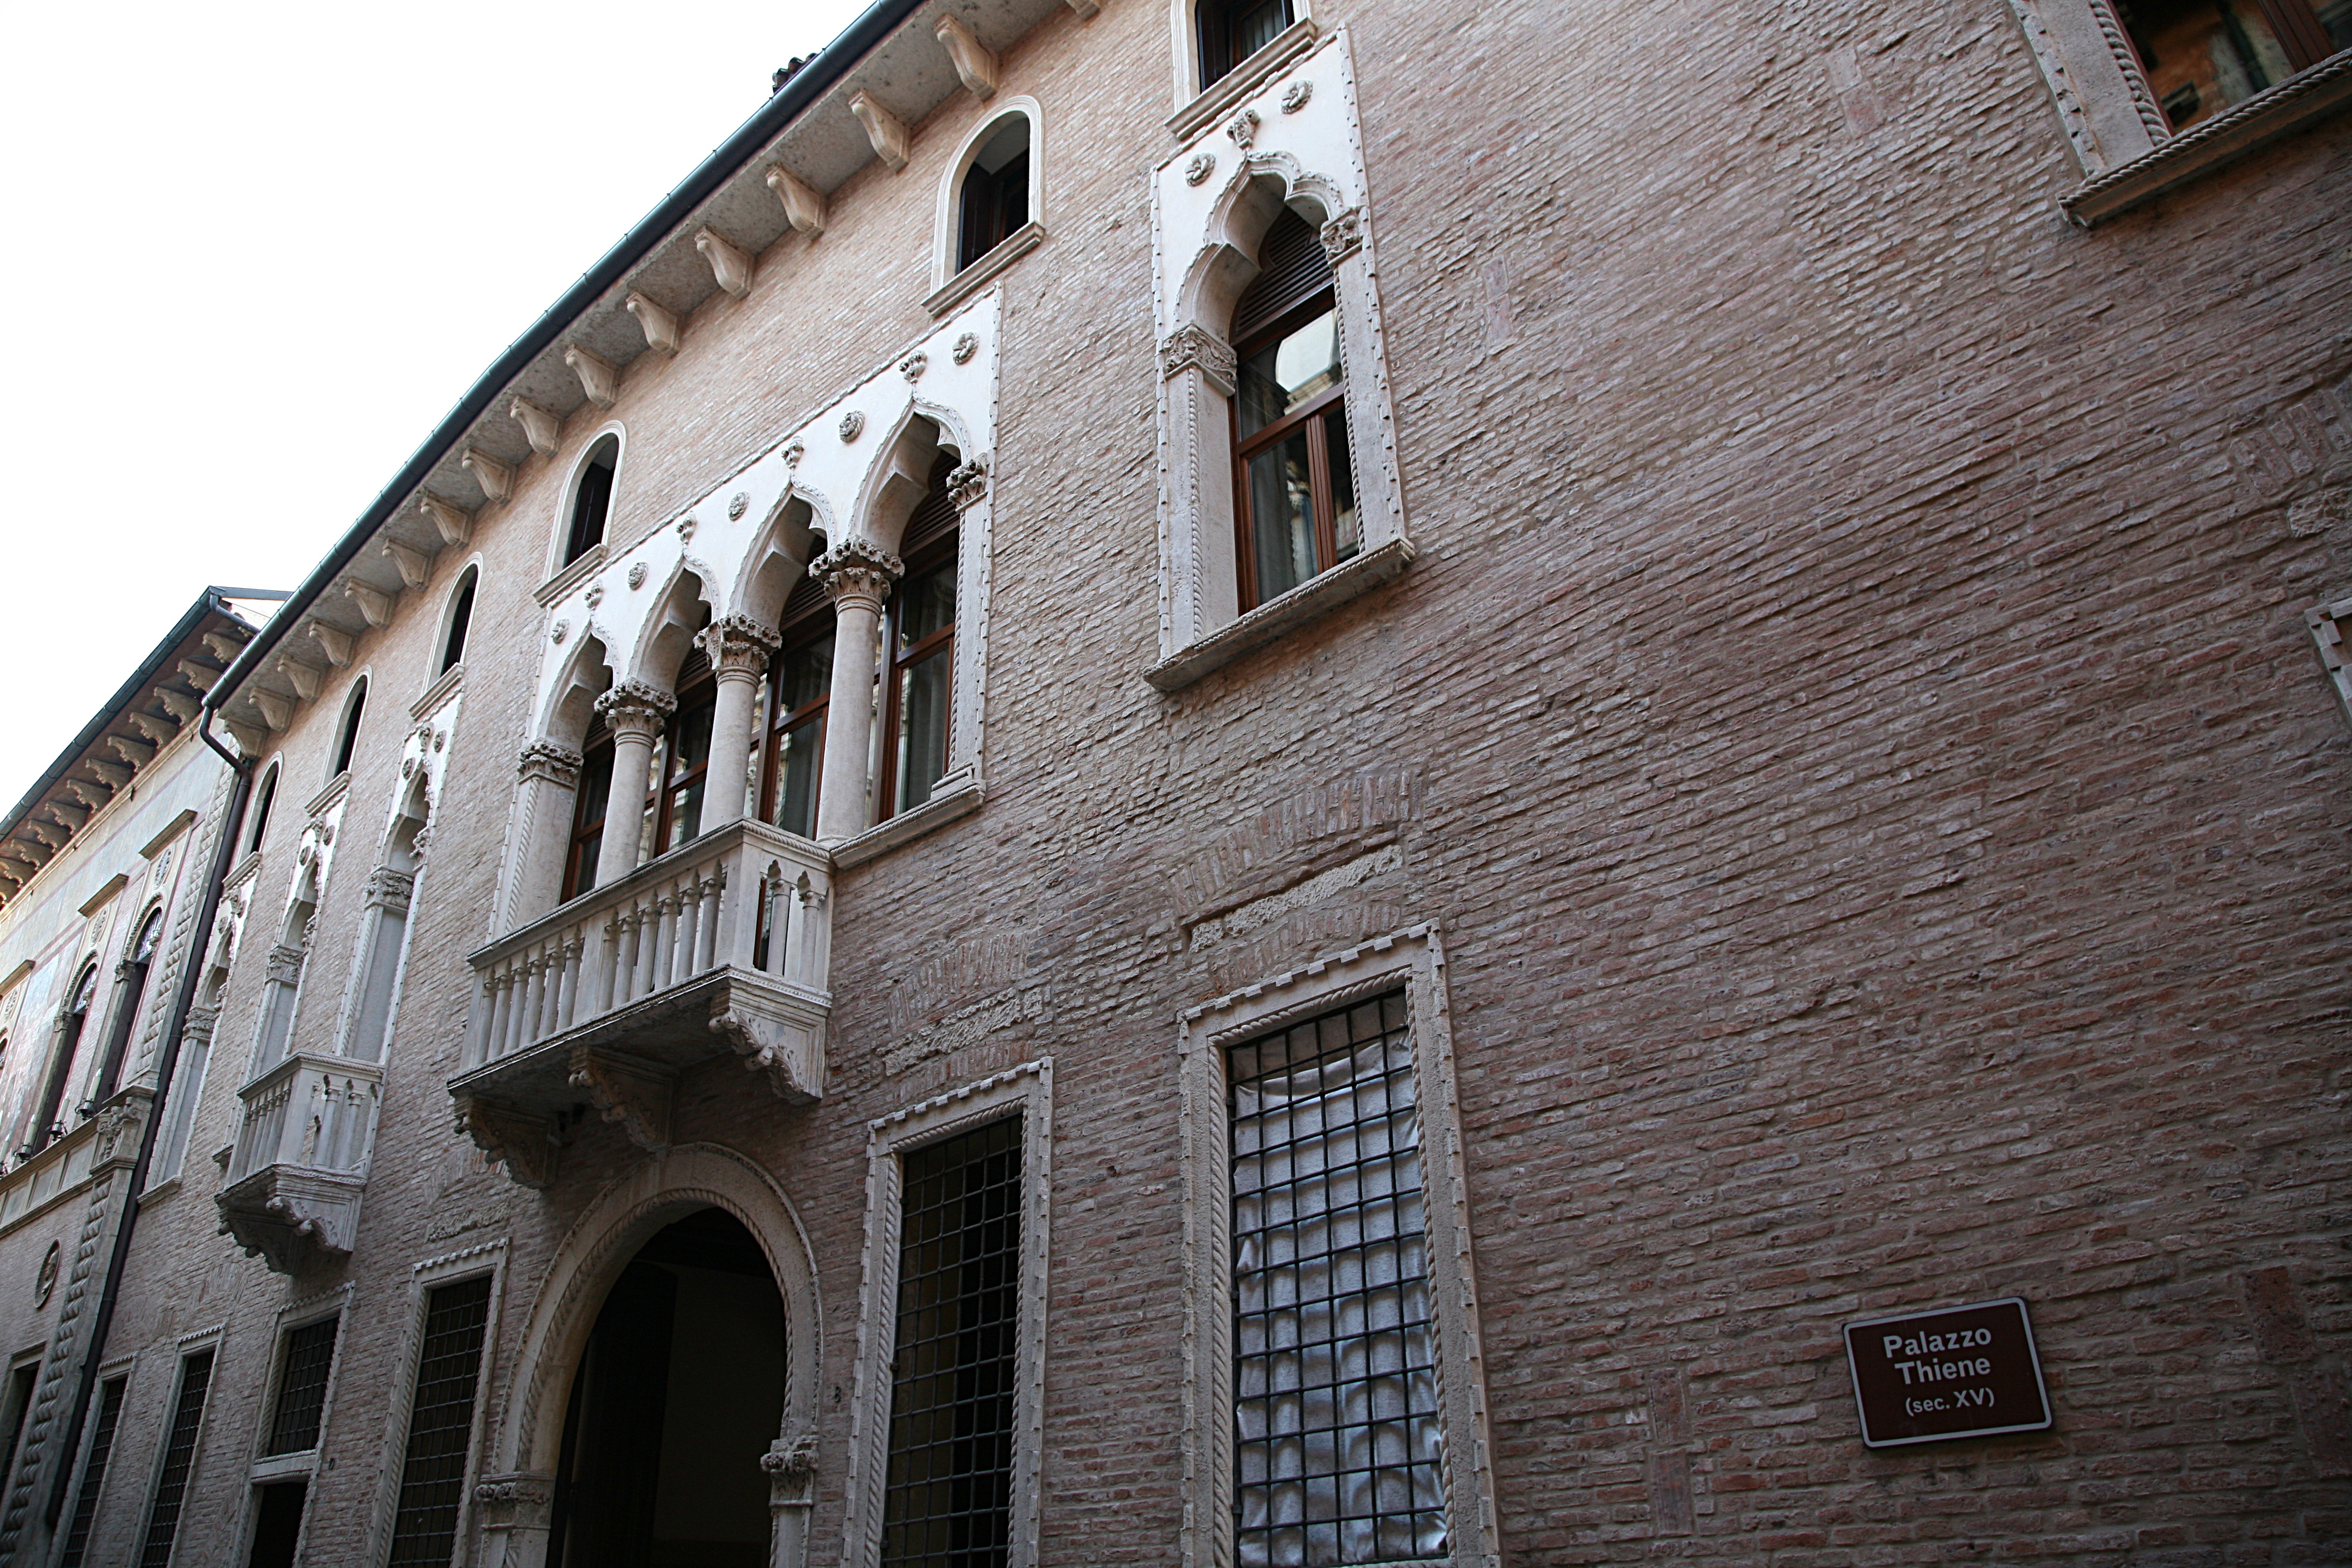 Palazzo Thiene, Vicenza<br /><br />Marcantonio és Adriano Thiene voltak a megbízók. 1542-ben Guilio Romano készíti el a terveket, majd 1544-ben kezdik el az építkezést, miközben a terveket Palladio átvariálja. Az 1490 körüli eredeti gótikus palotára épült. Cél a Thiene testvérek és vendégeik kozmopolita elvárásainak a teljesítése, és az épület által a városban betöltött politikai szerepük kifejezése. A képen a gótikus homlokzati rész látható.<br /><br />Kép: Wikimedia Commons / Hans A. Rosbach